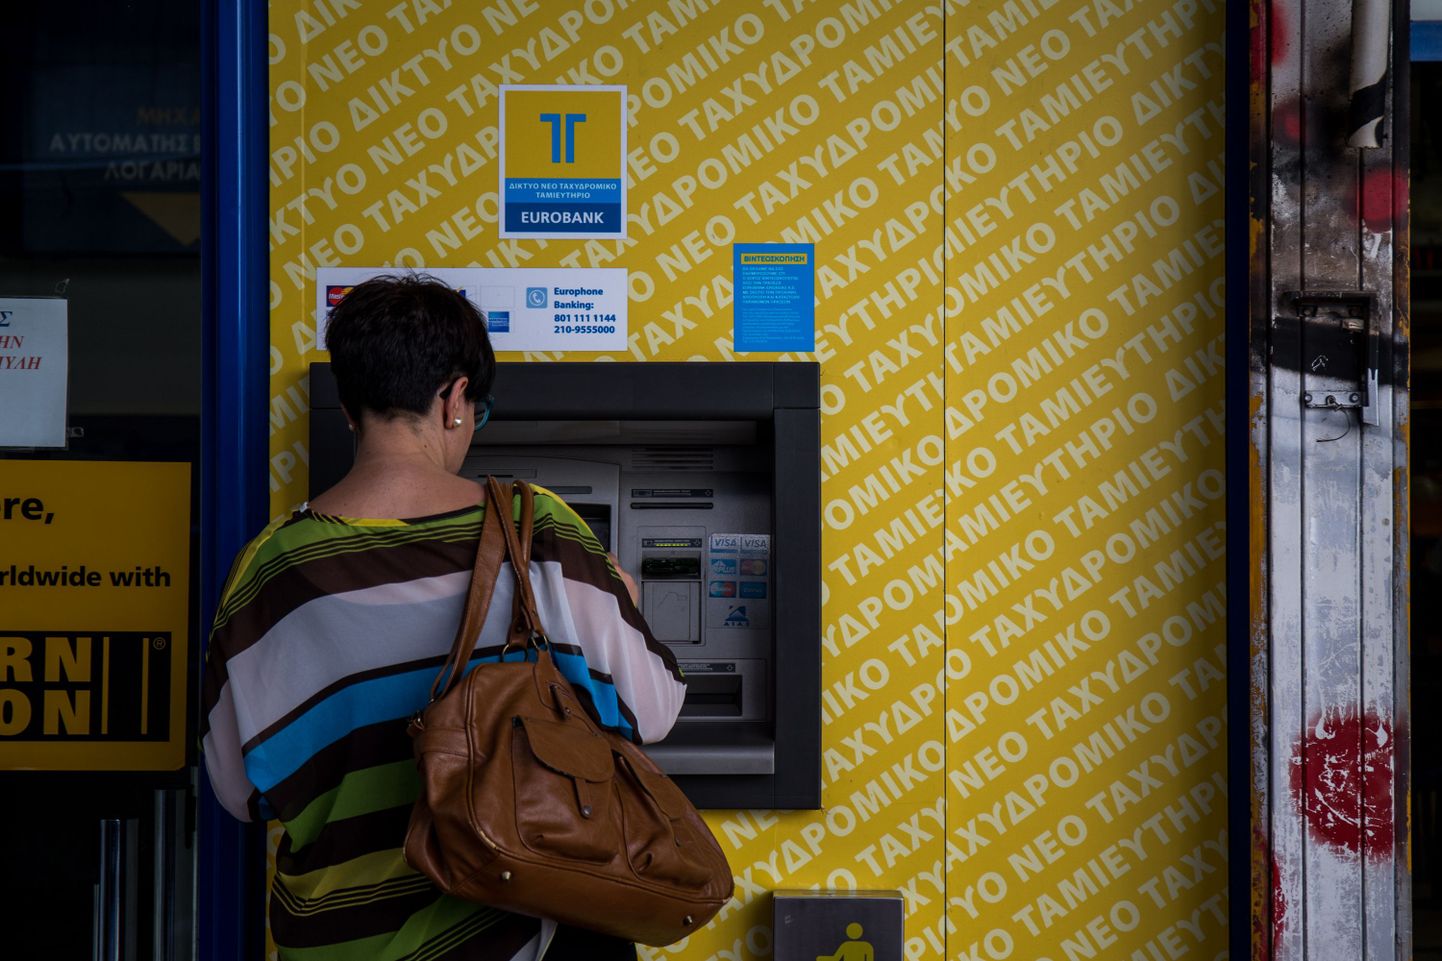 Maksimaalne sularahasumma, mille kreeklased välja võtta saavad, on 60 eurot, pangaautomaatide juures looklevad järjekorrad.